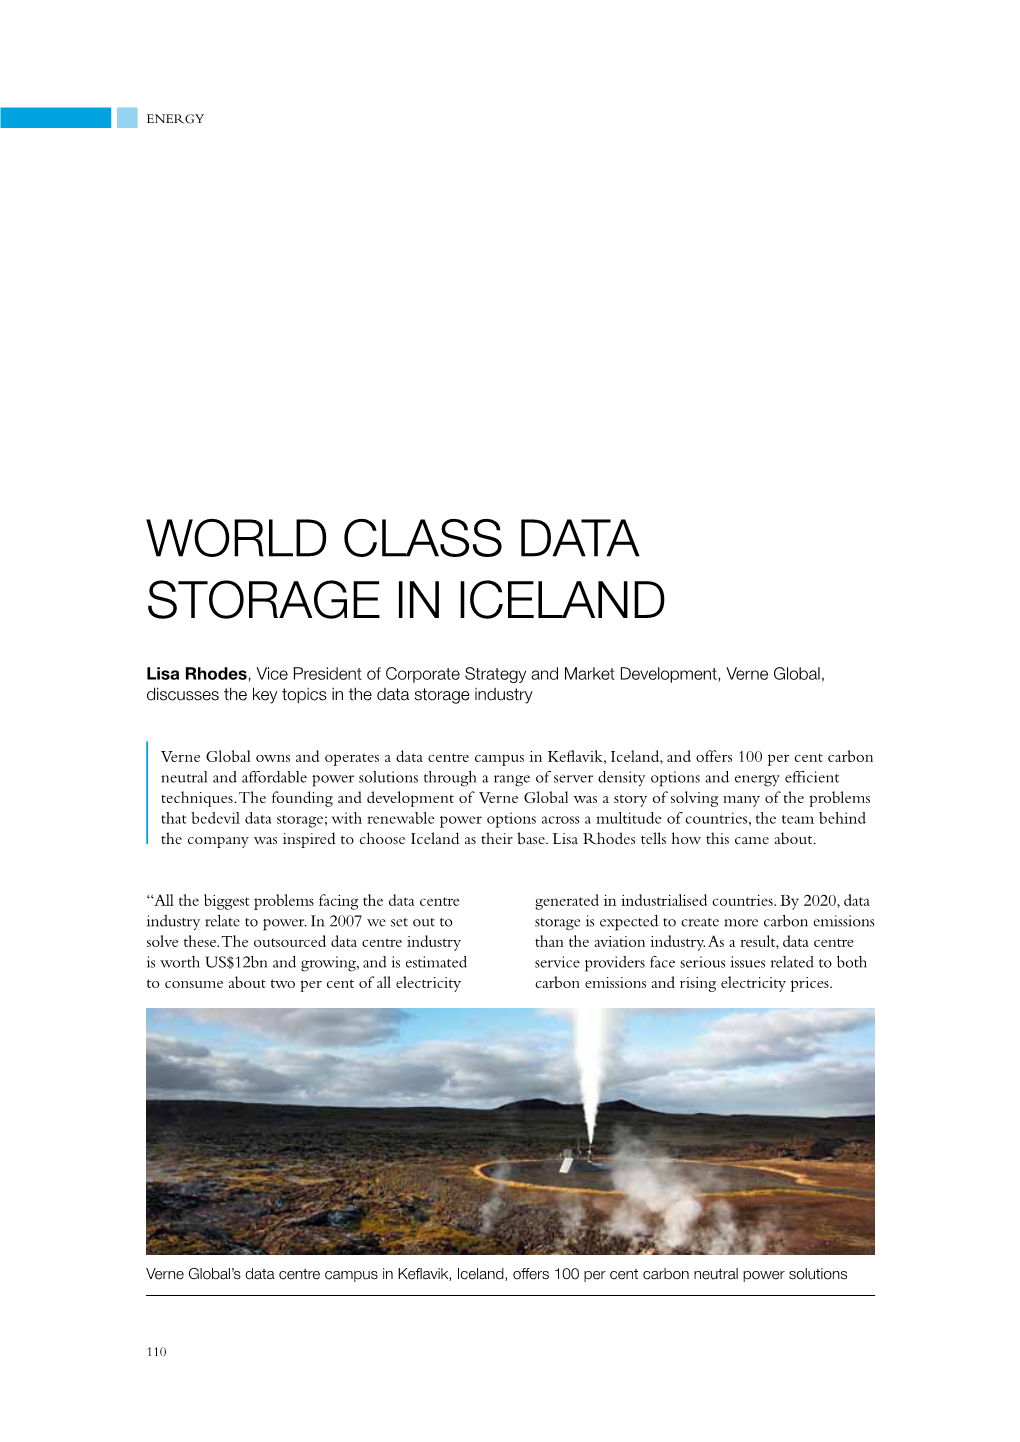 World Class Data Storage in Iceland